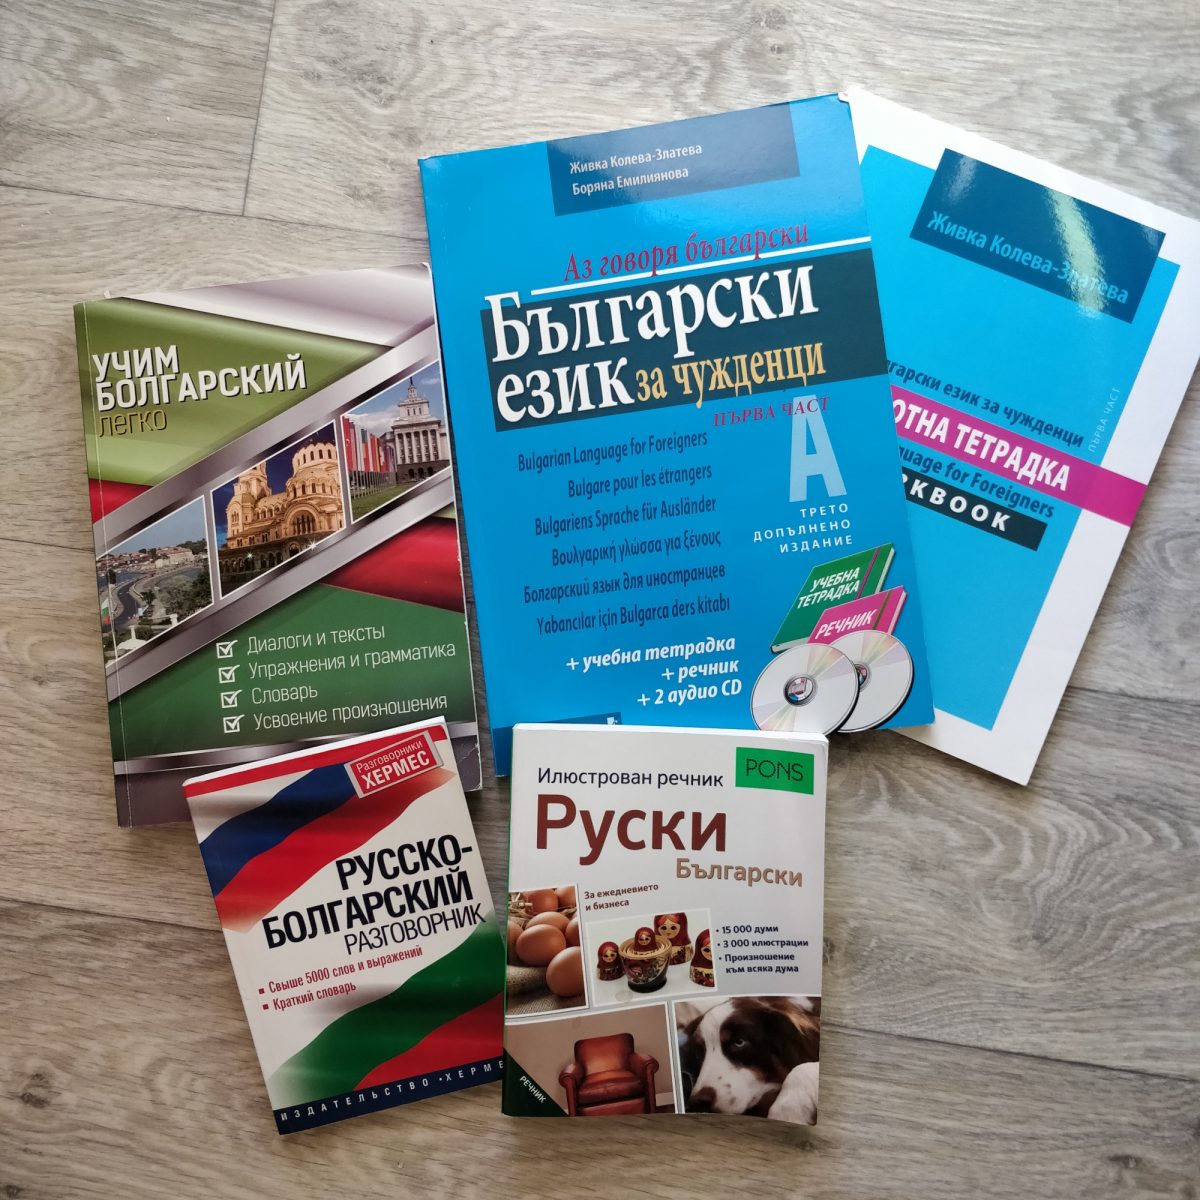 Учебники для изучения болгарского языка